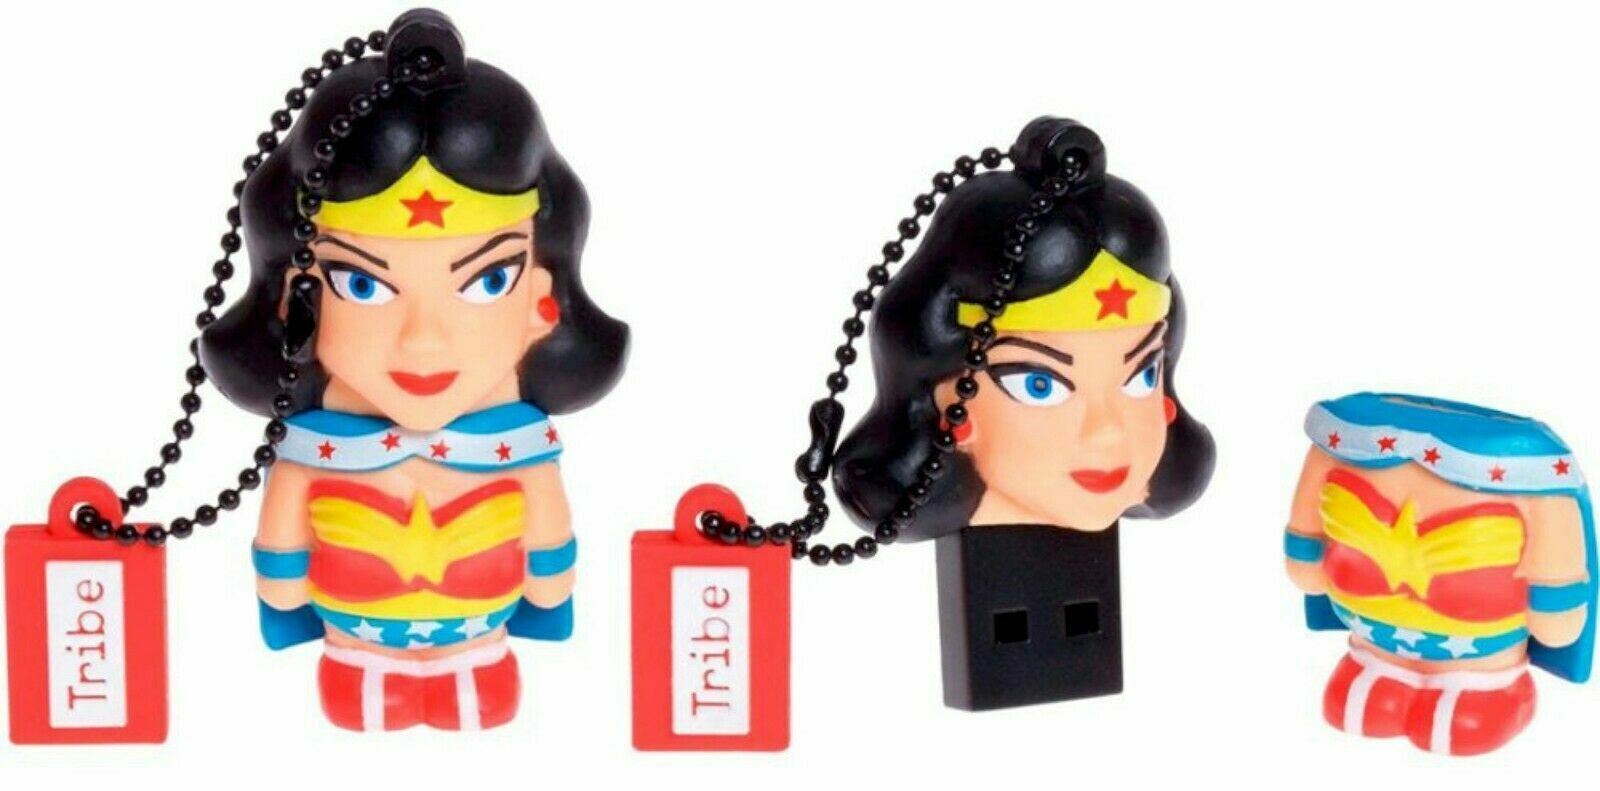 NEW Tribe DC Comics WONDER WOMAN 16gb USB 2.0 Flash Drive Storage Super Hero